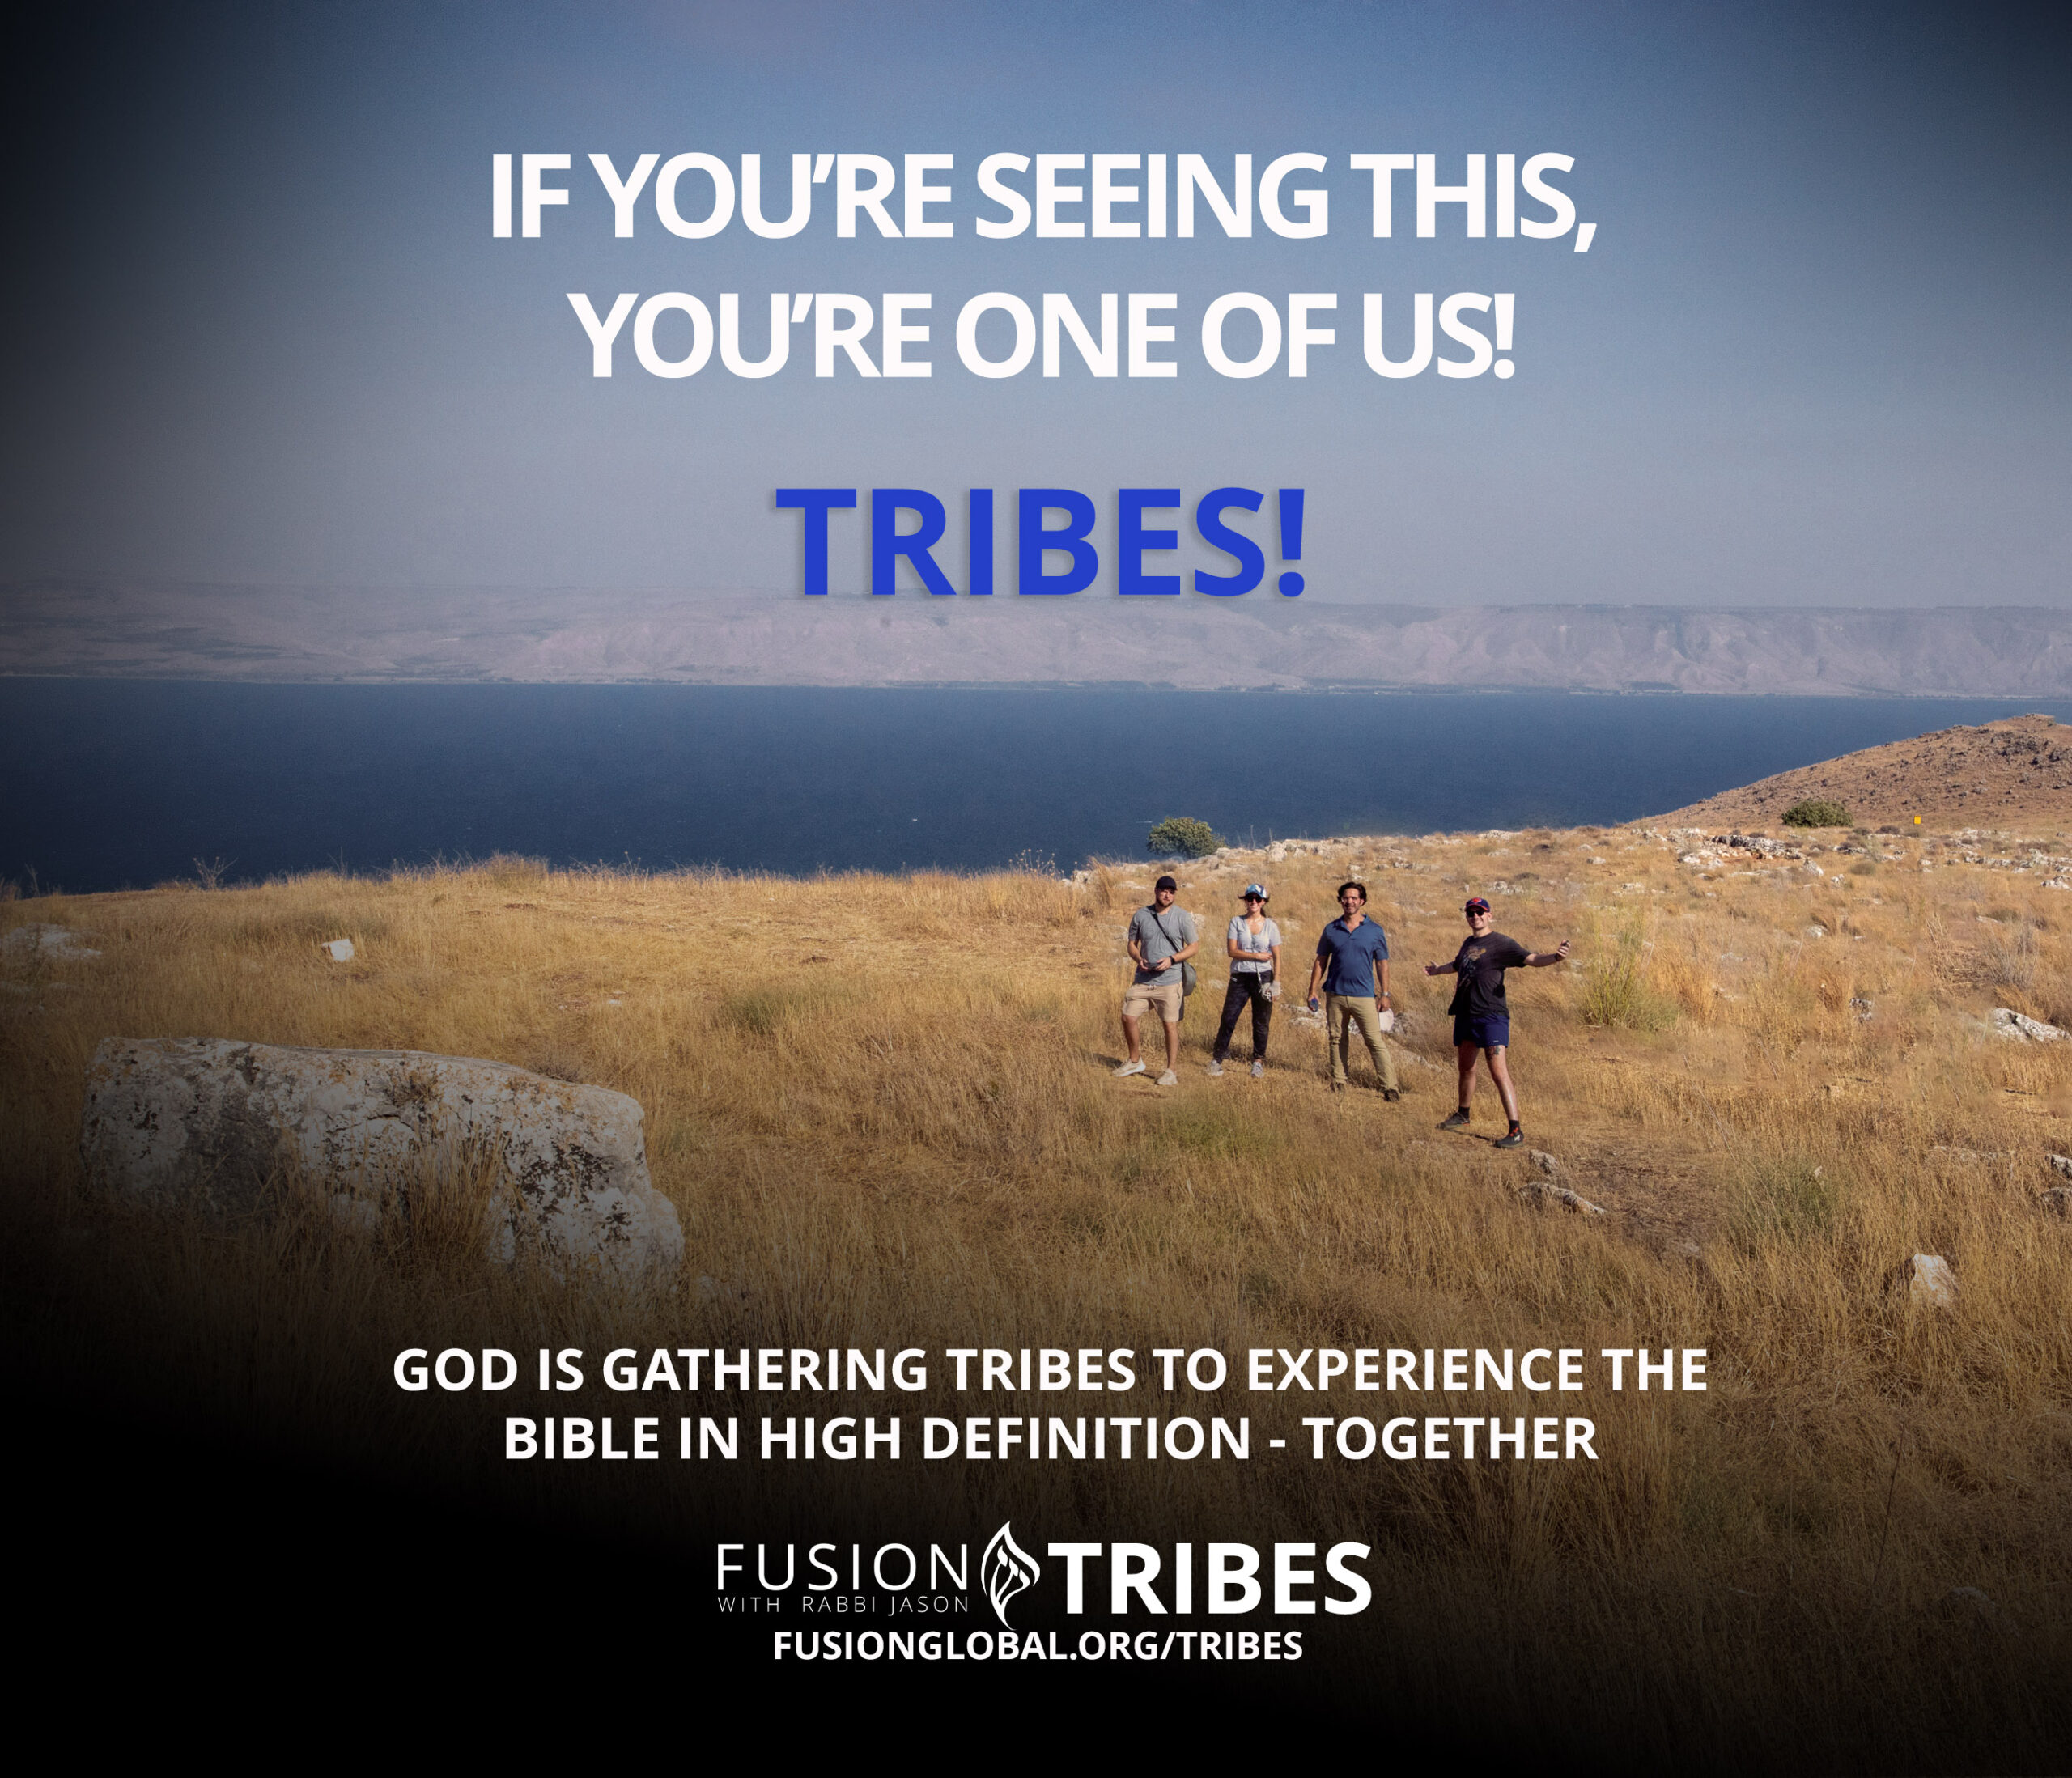 Fusion Tribes Rabbi Jason Sobel